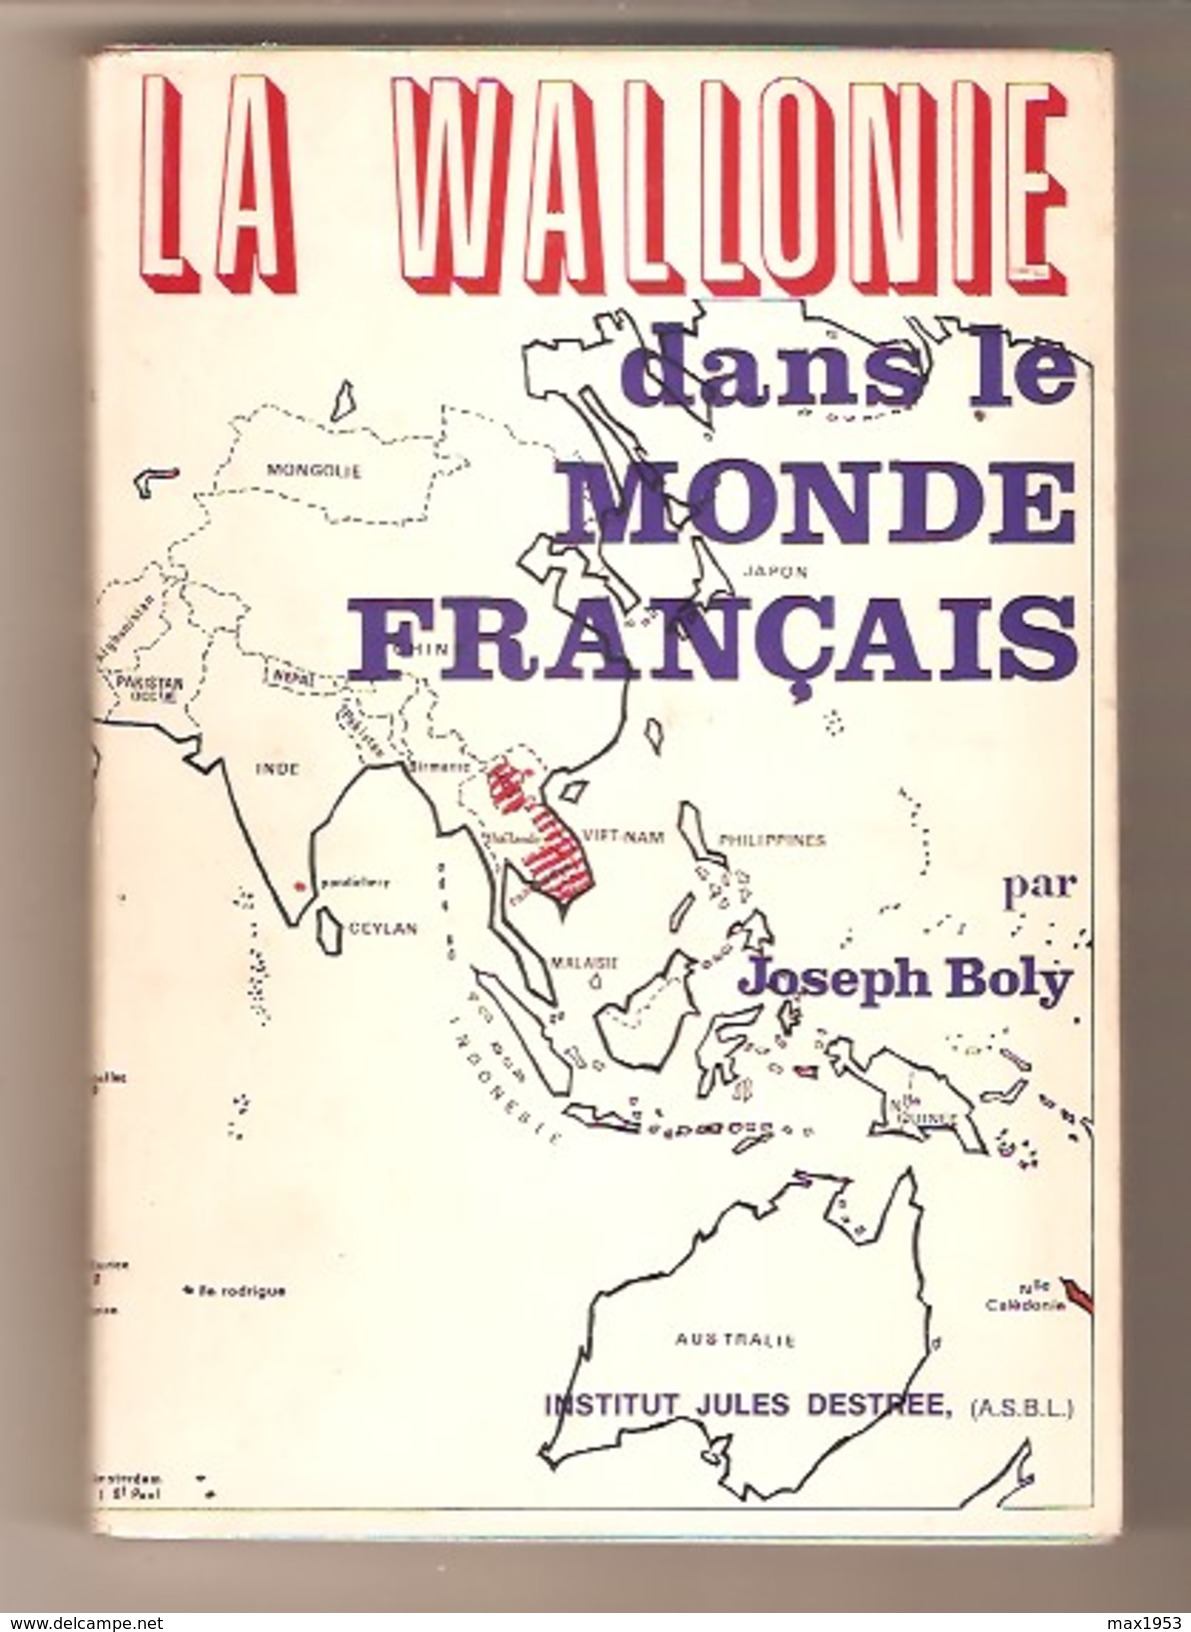 LA WALLONIE DANS LE MONDE FRANCAIS Par Joseph Boly , Institut Jules Destrée, 1971 - Connaître La Wallonie N°16 - België